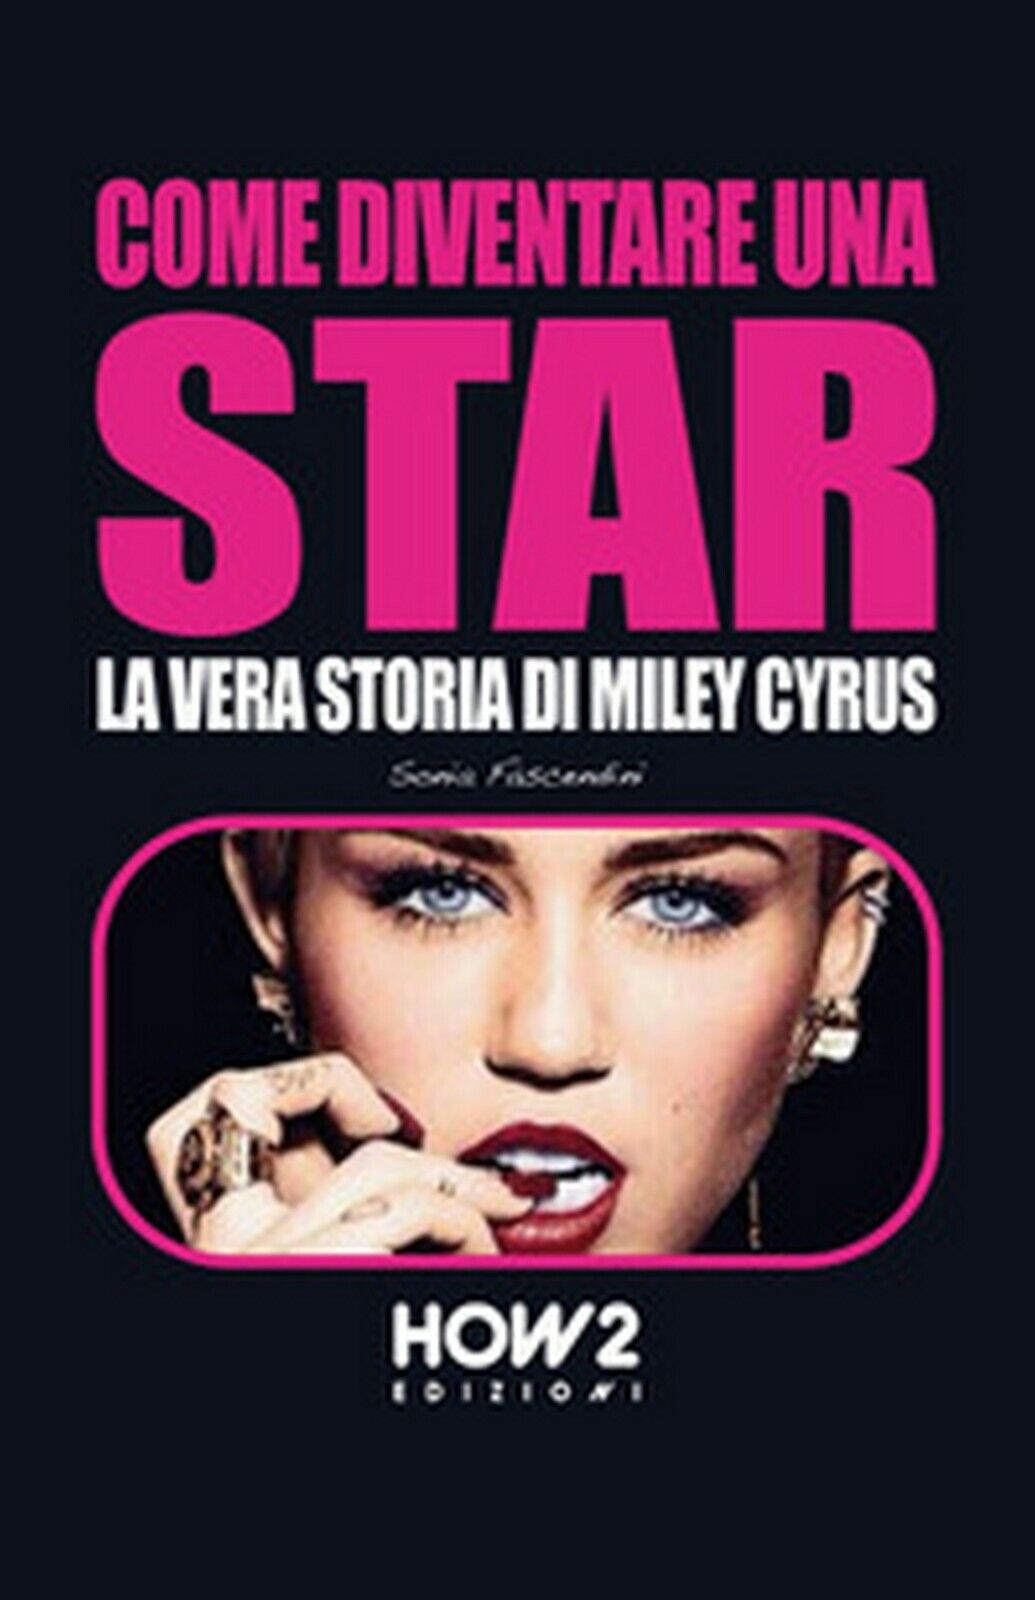 Come diventare una star. Storia di Miley Cyrus, Sonia Fascendini,  2016,  How2